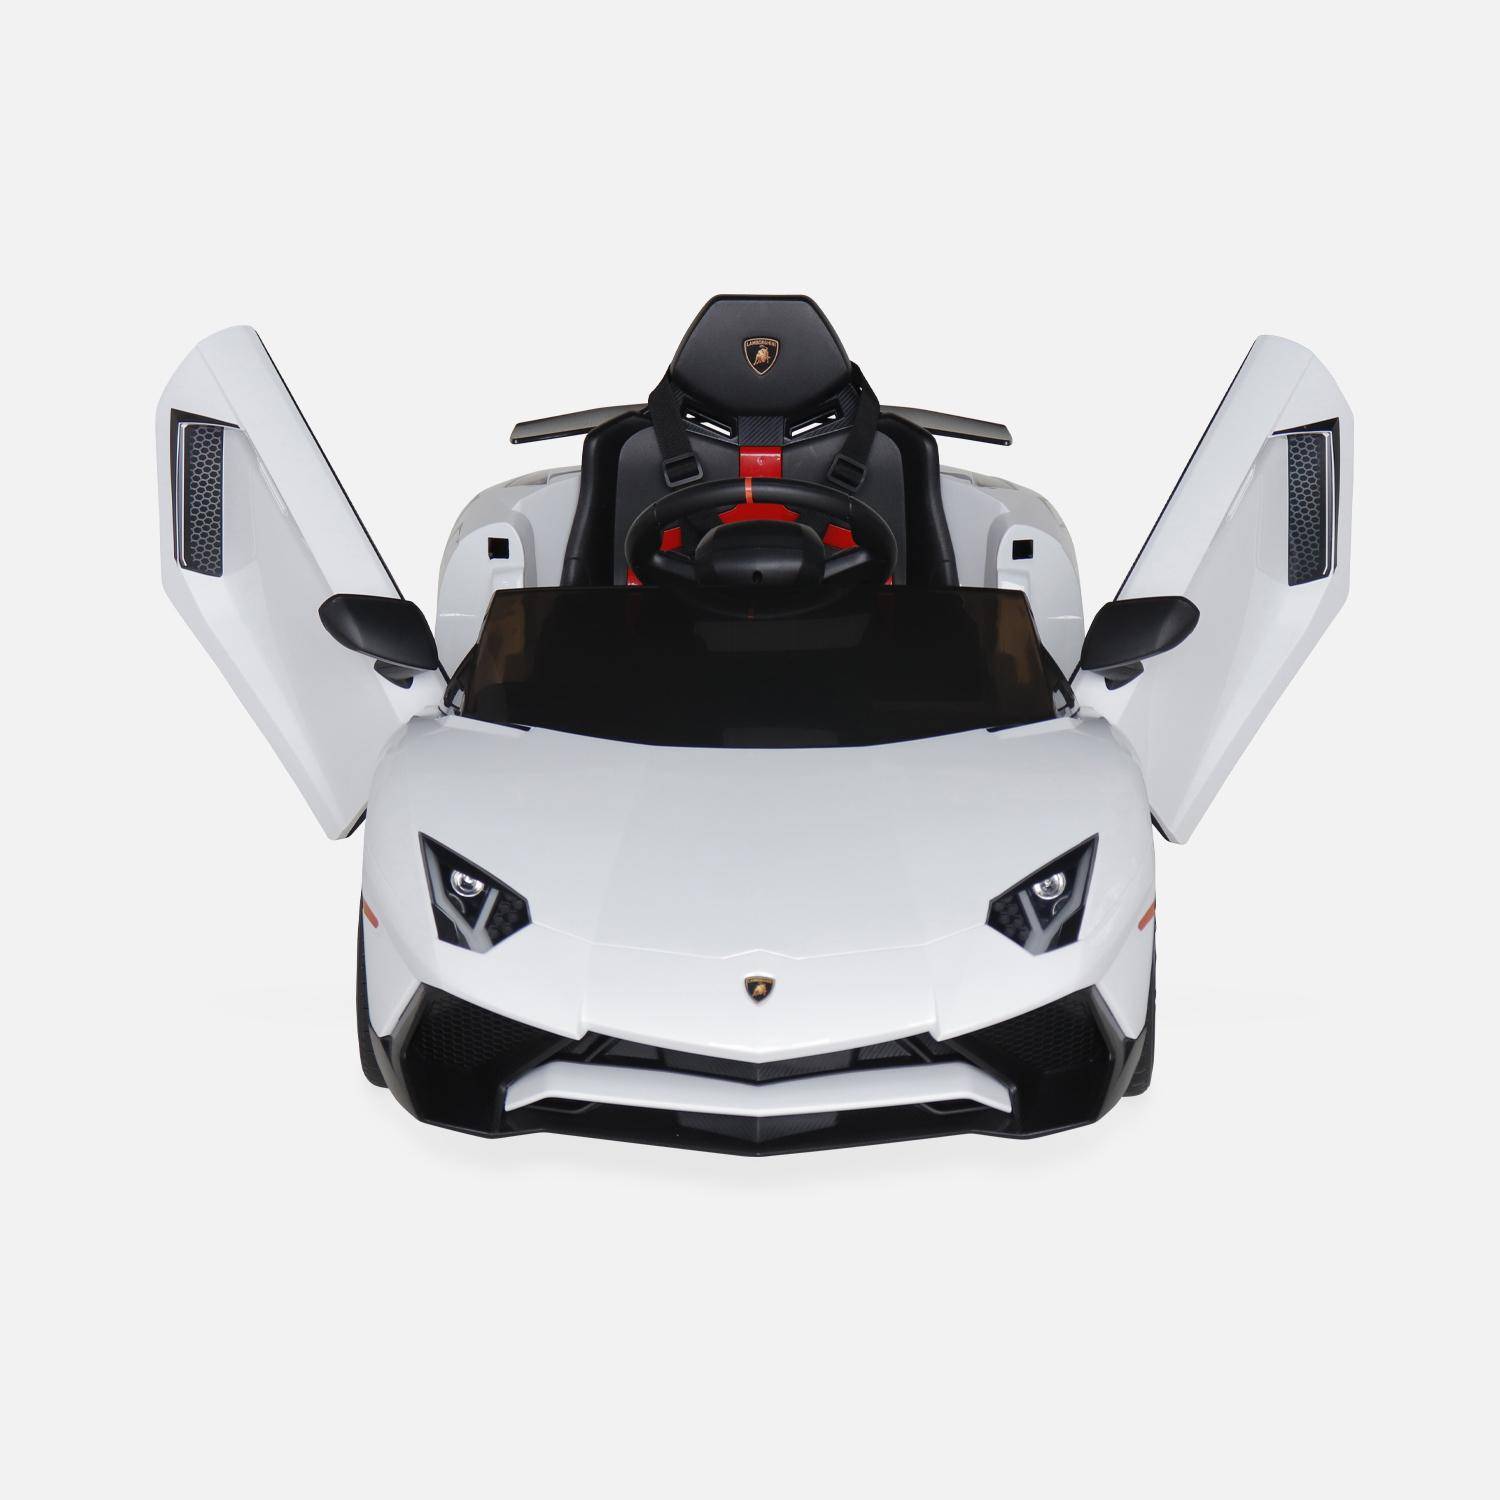 12V Lamborghini elektrische kinderauto, wit, 1 zitplaats, met radio, afstandsbediening, MP3, USB-poort en functionele koplampen Photo6